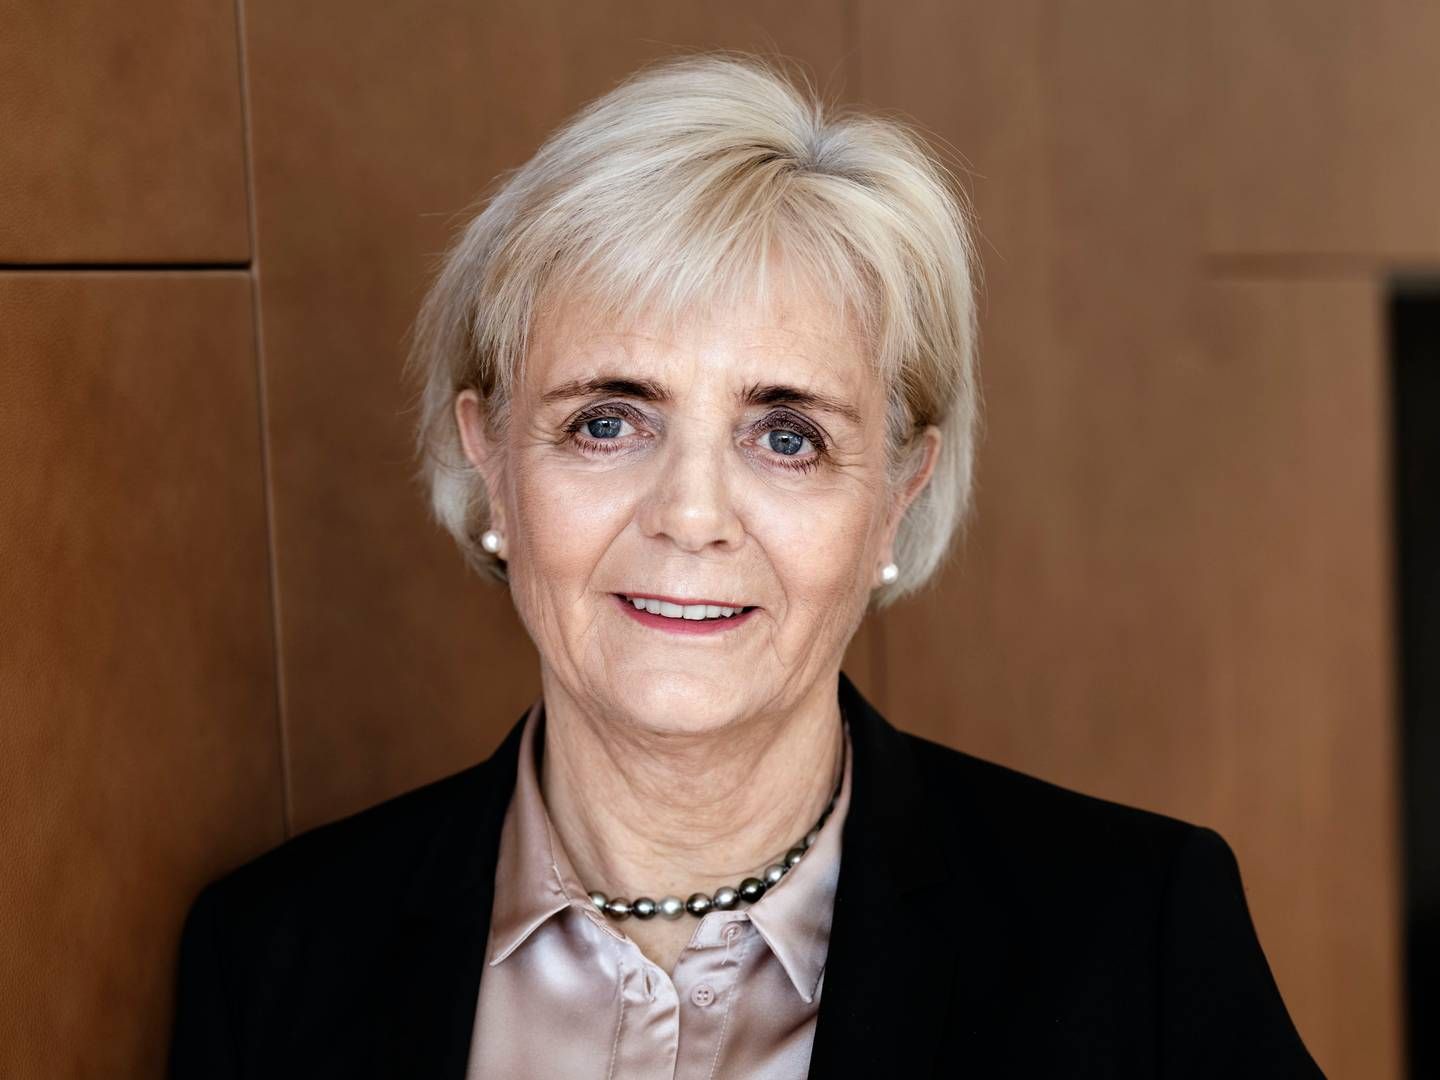 Sydbanks adm. direktør Karen Frøsig var i 2019 igennem et magtopgør, der på mange måder gjorde hende stærkere, mener kredsformanden for ansatte i Sydbank, Jarl Oxlund. | Foto: Sydbank-pr